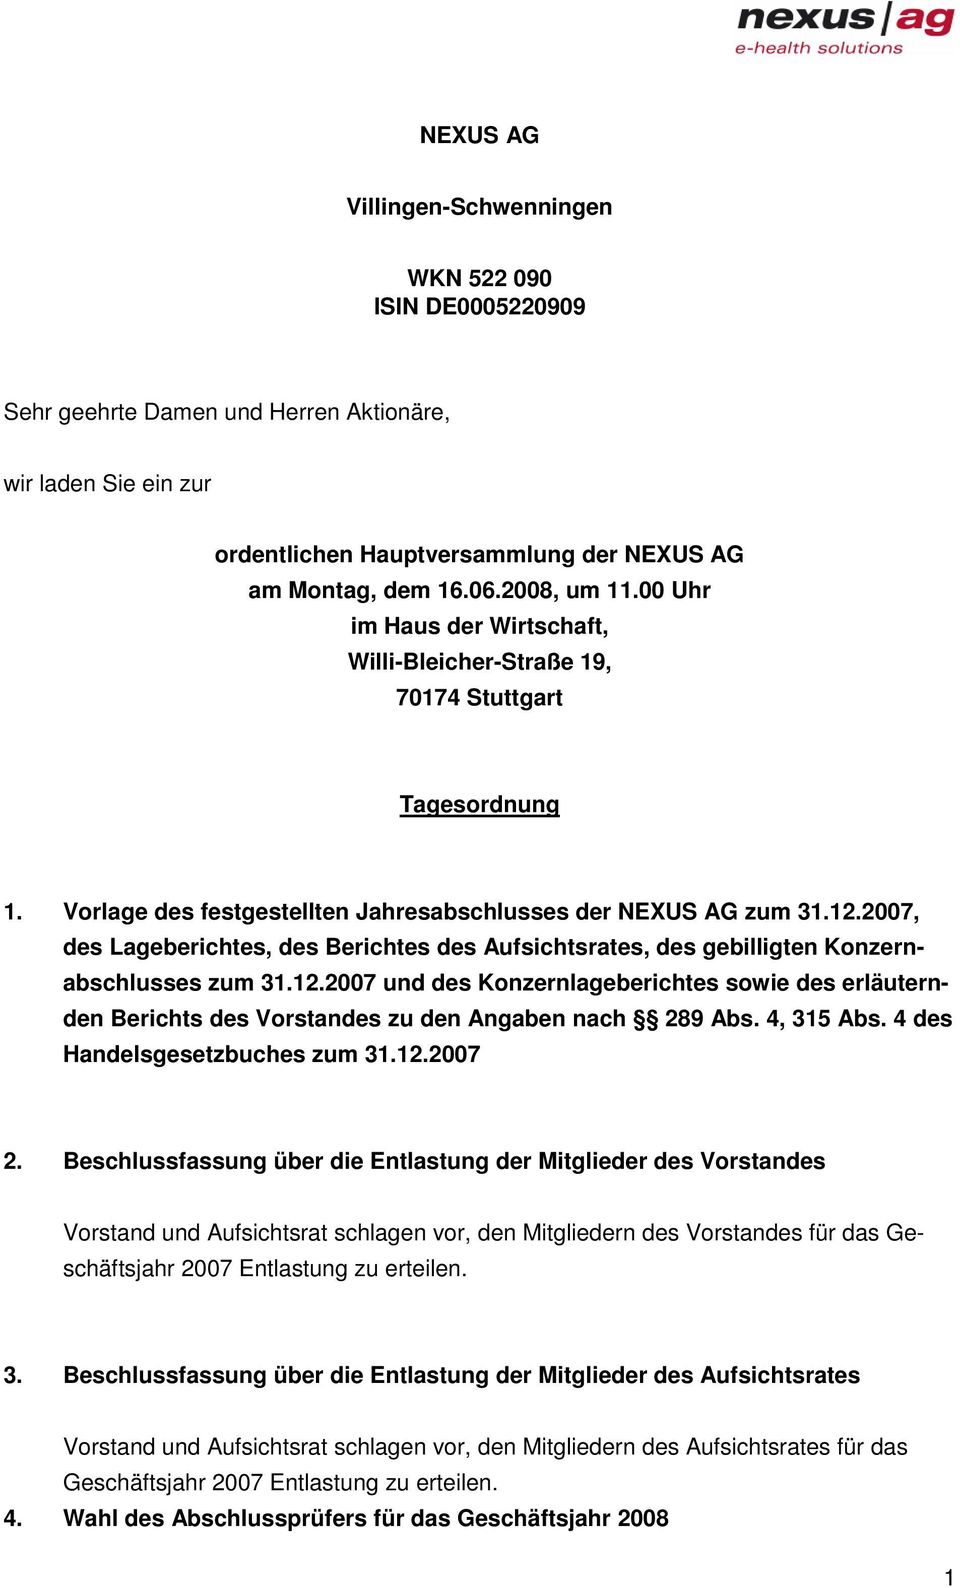 2007, des Lageberichtes, des Berichtes des Aufsichtsrates, des gebilligten Konzernabschlusses zum 31.12.